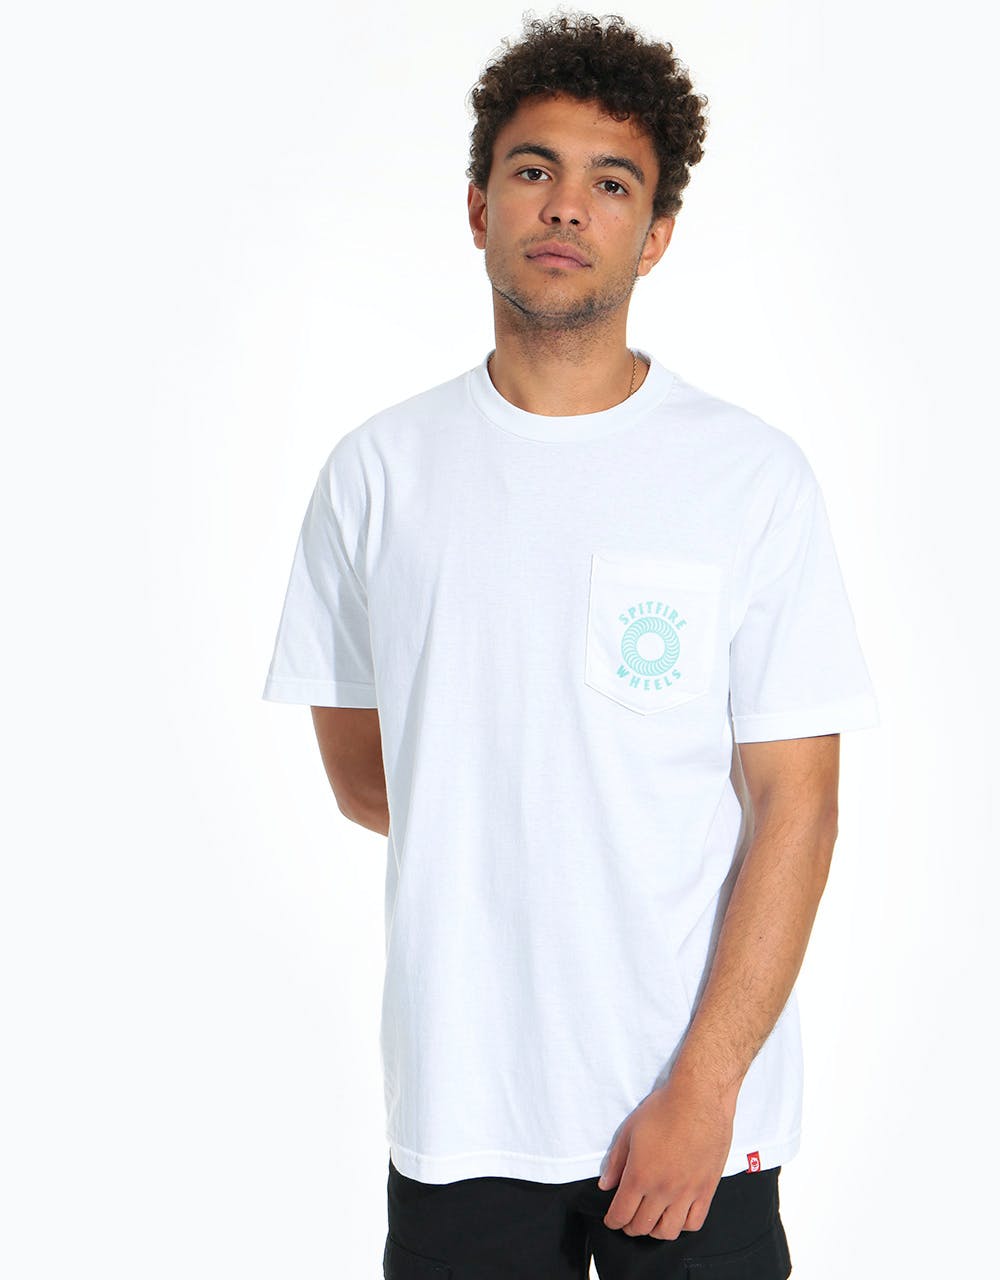 Spitfire Hollow Classic Pocket T-Shirt - White/Aqua